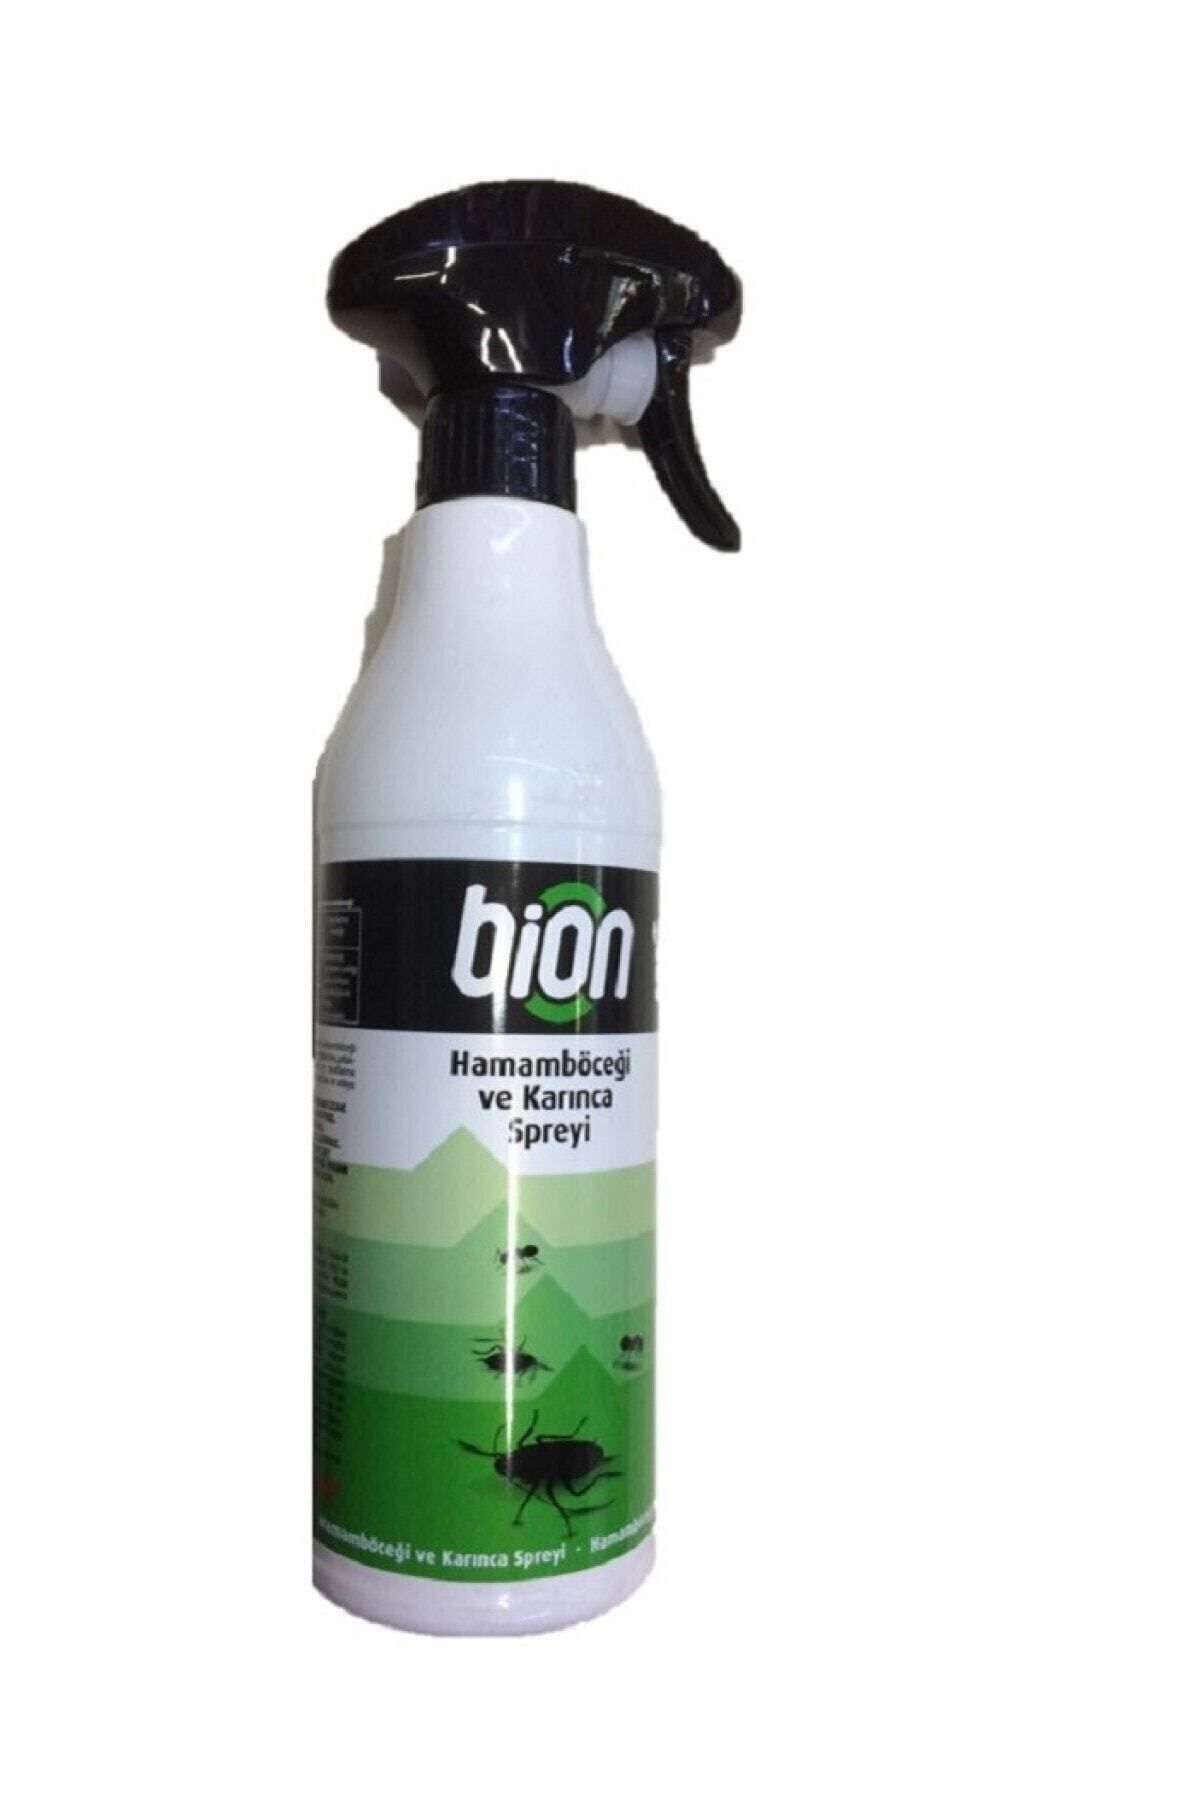 Bion Hamam Böceği Ve Karınca Spreyi 450 ml